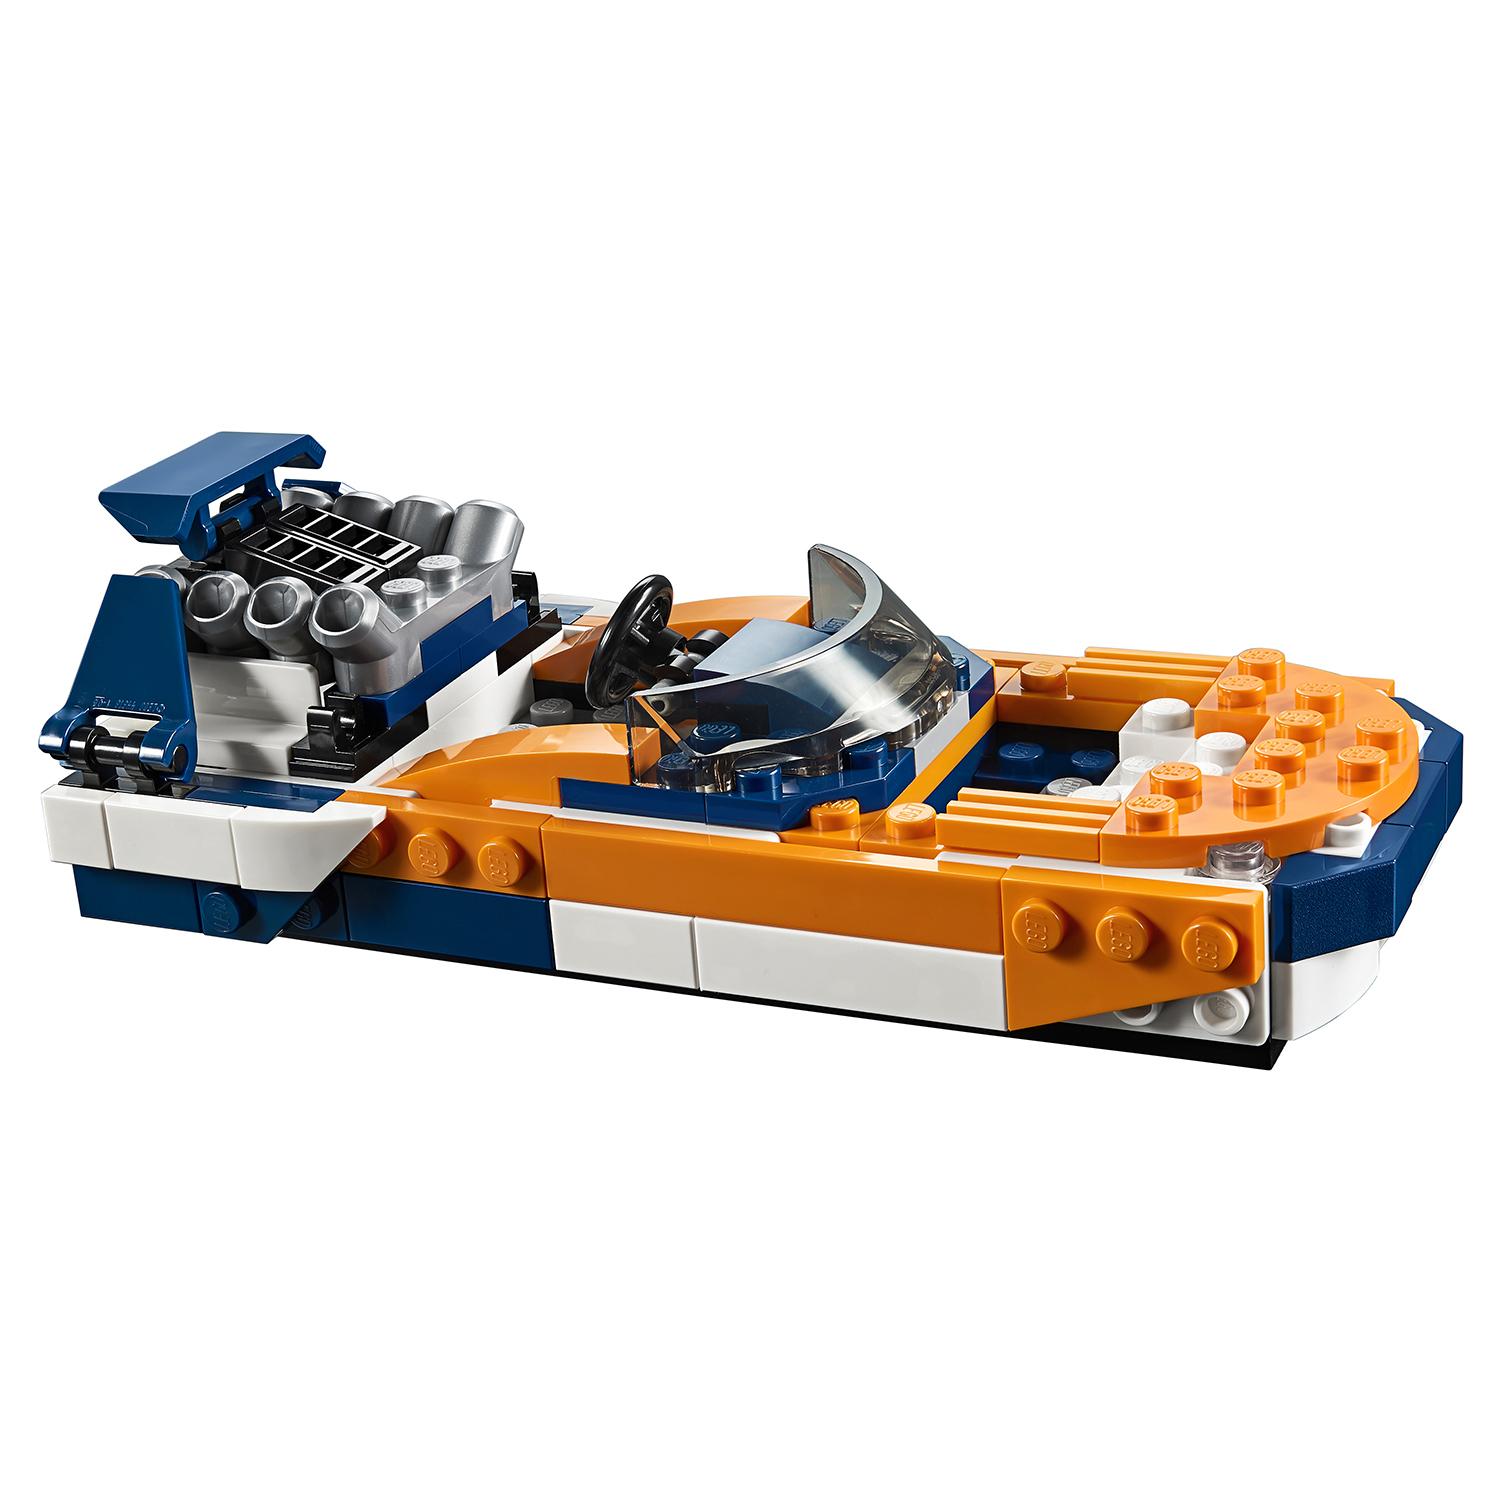 Конструктор LEGO Creator 3 в 1 - Гоночный автомобиль, оранжевый